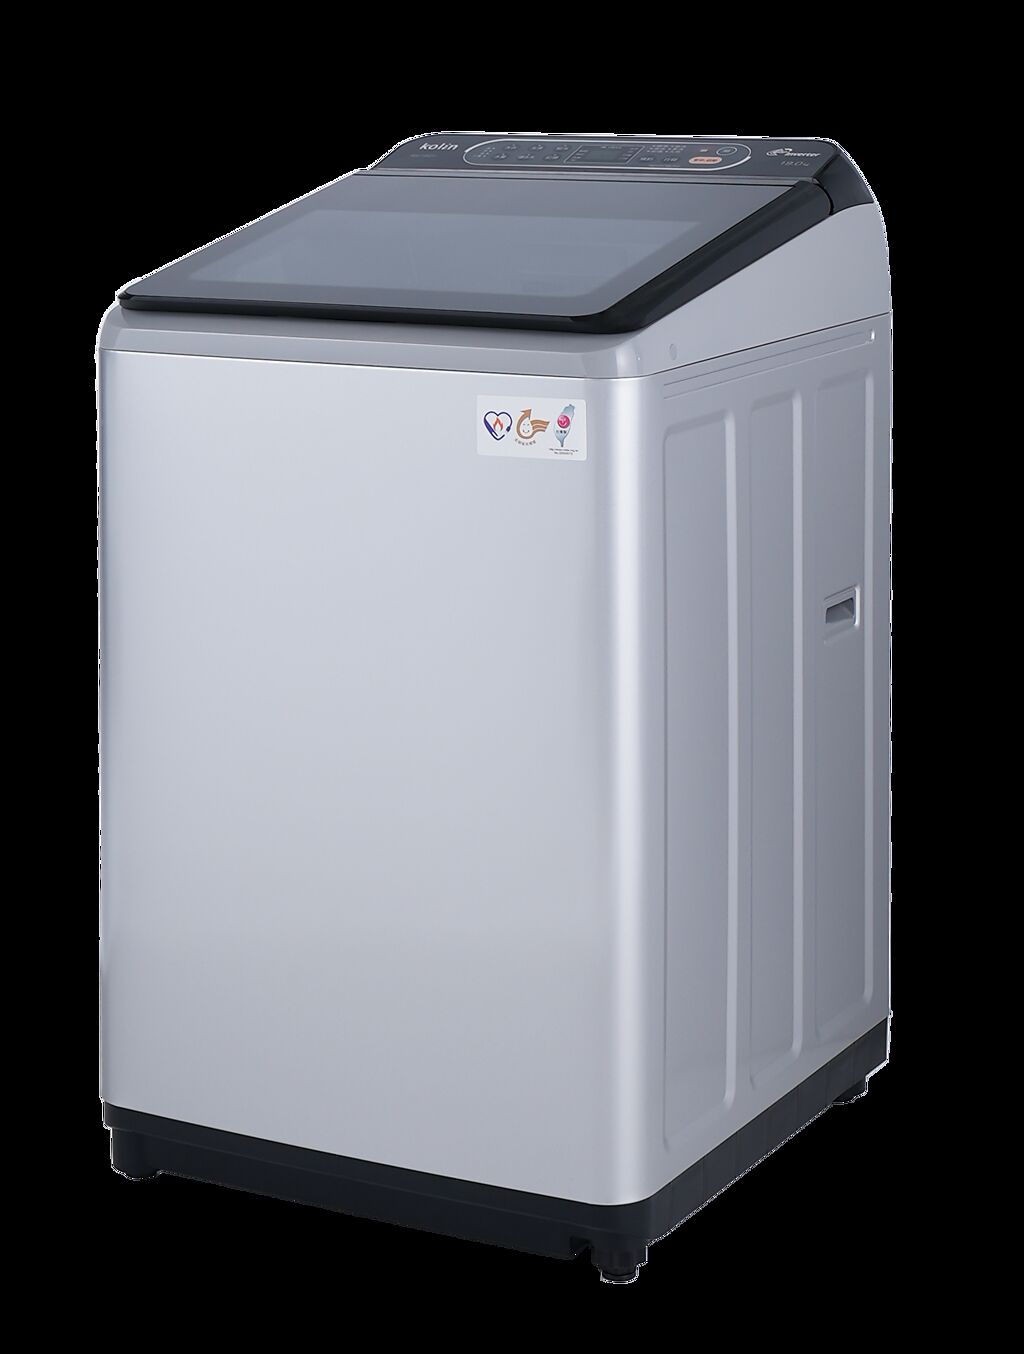 歌林全新直驅變頻單槽洗衣機 BW-19V01、BW-17V01、BW-15S05，共推出19、17公斤變頻及15公斤定頻3款尺寸，強力洗淨同時也能減震減音又省電，更採斜面設計讓衣物更好拿取。（歌林提供）